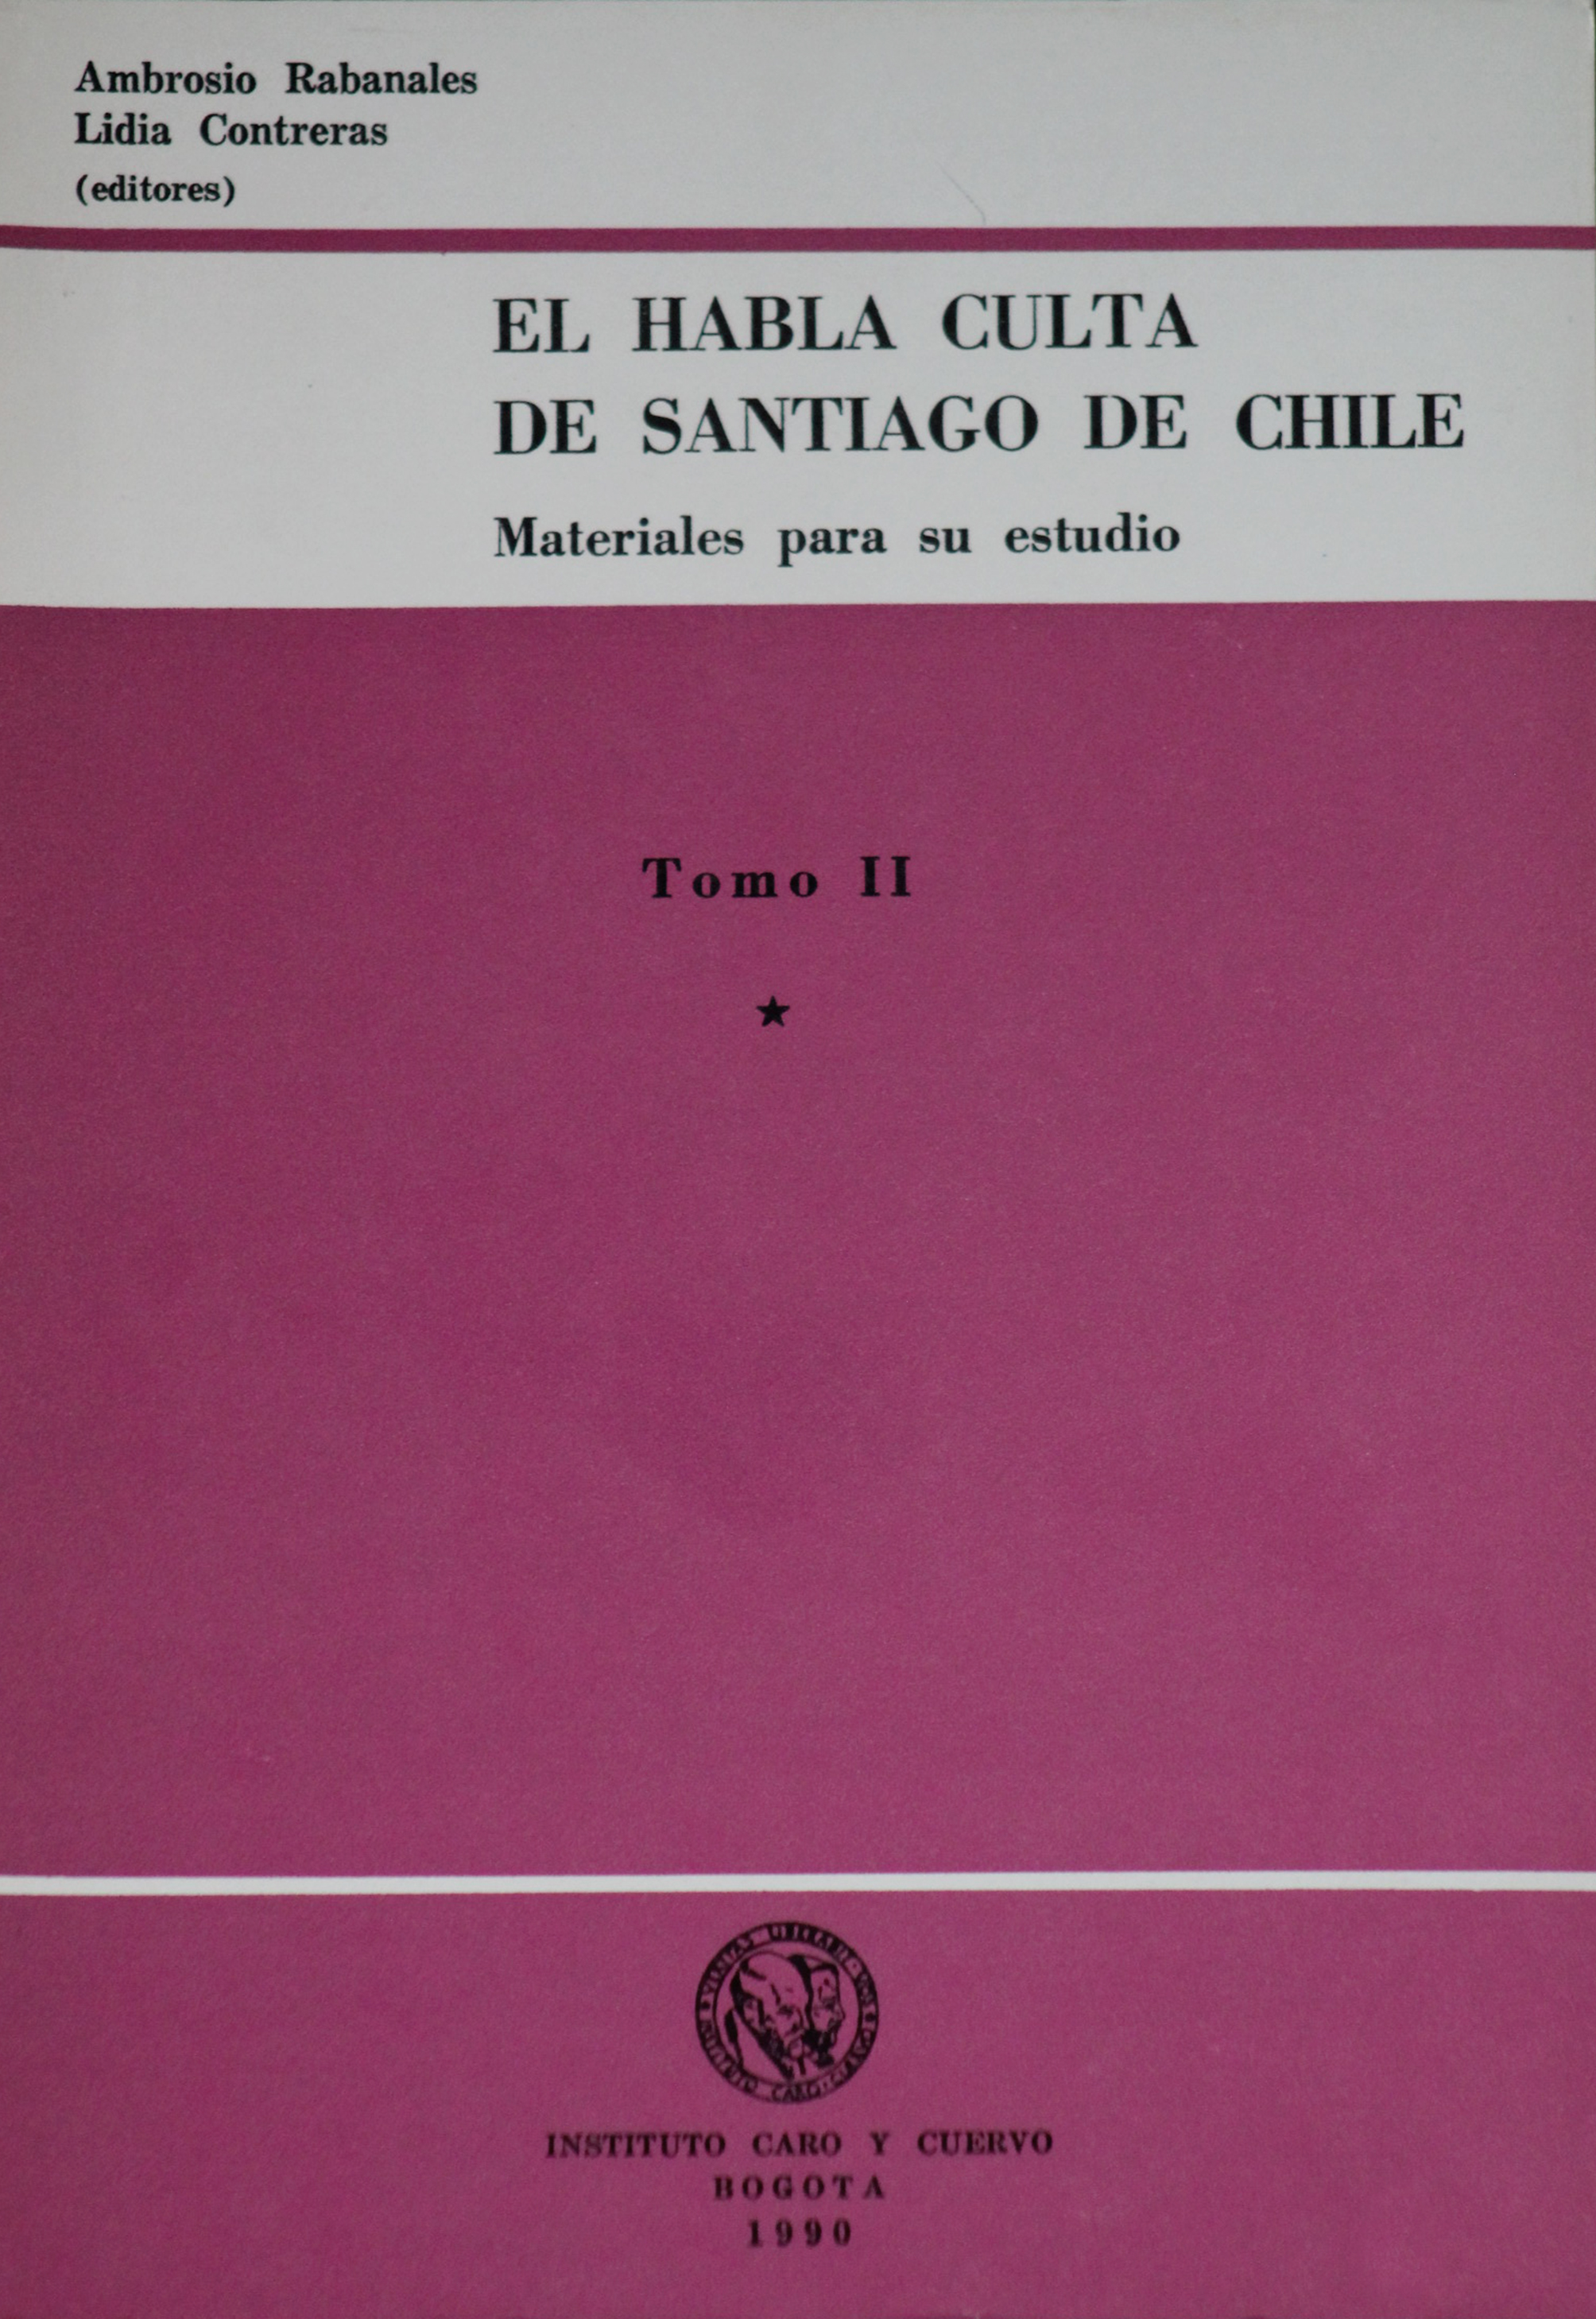 El habla culta de Santiago de Chile